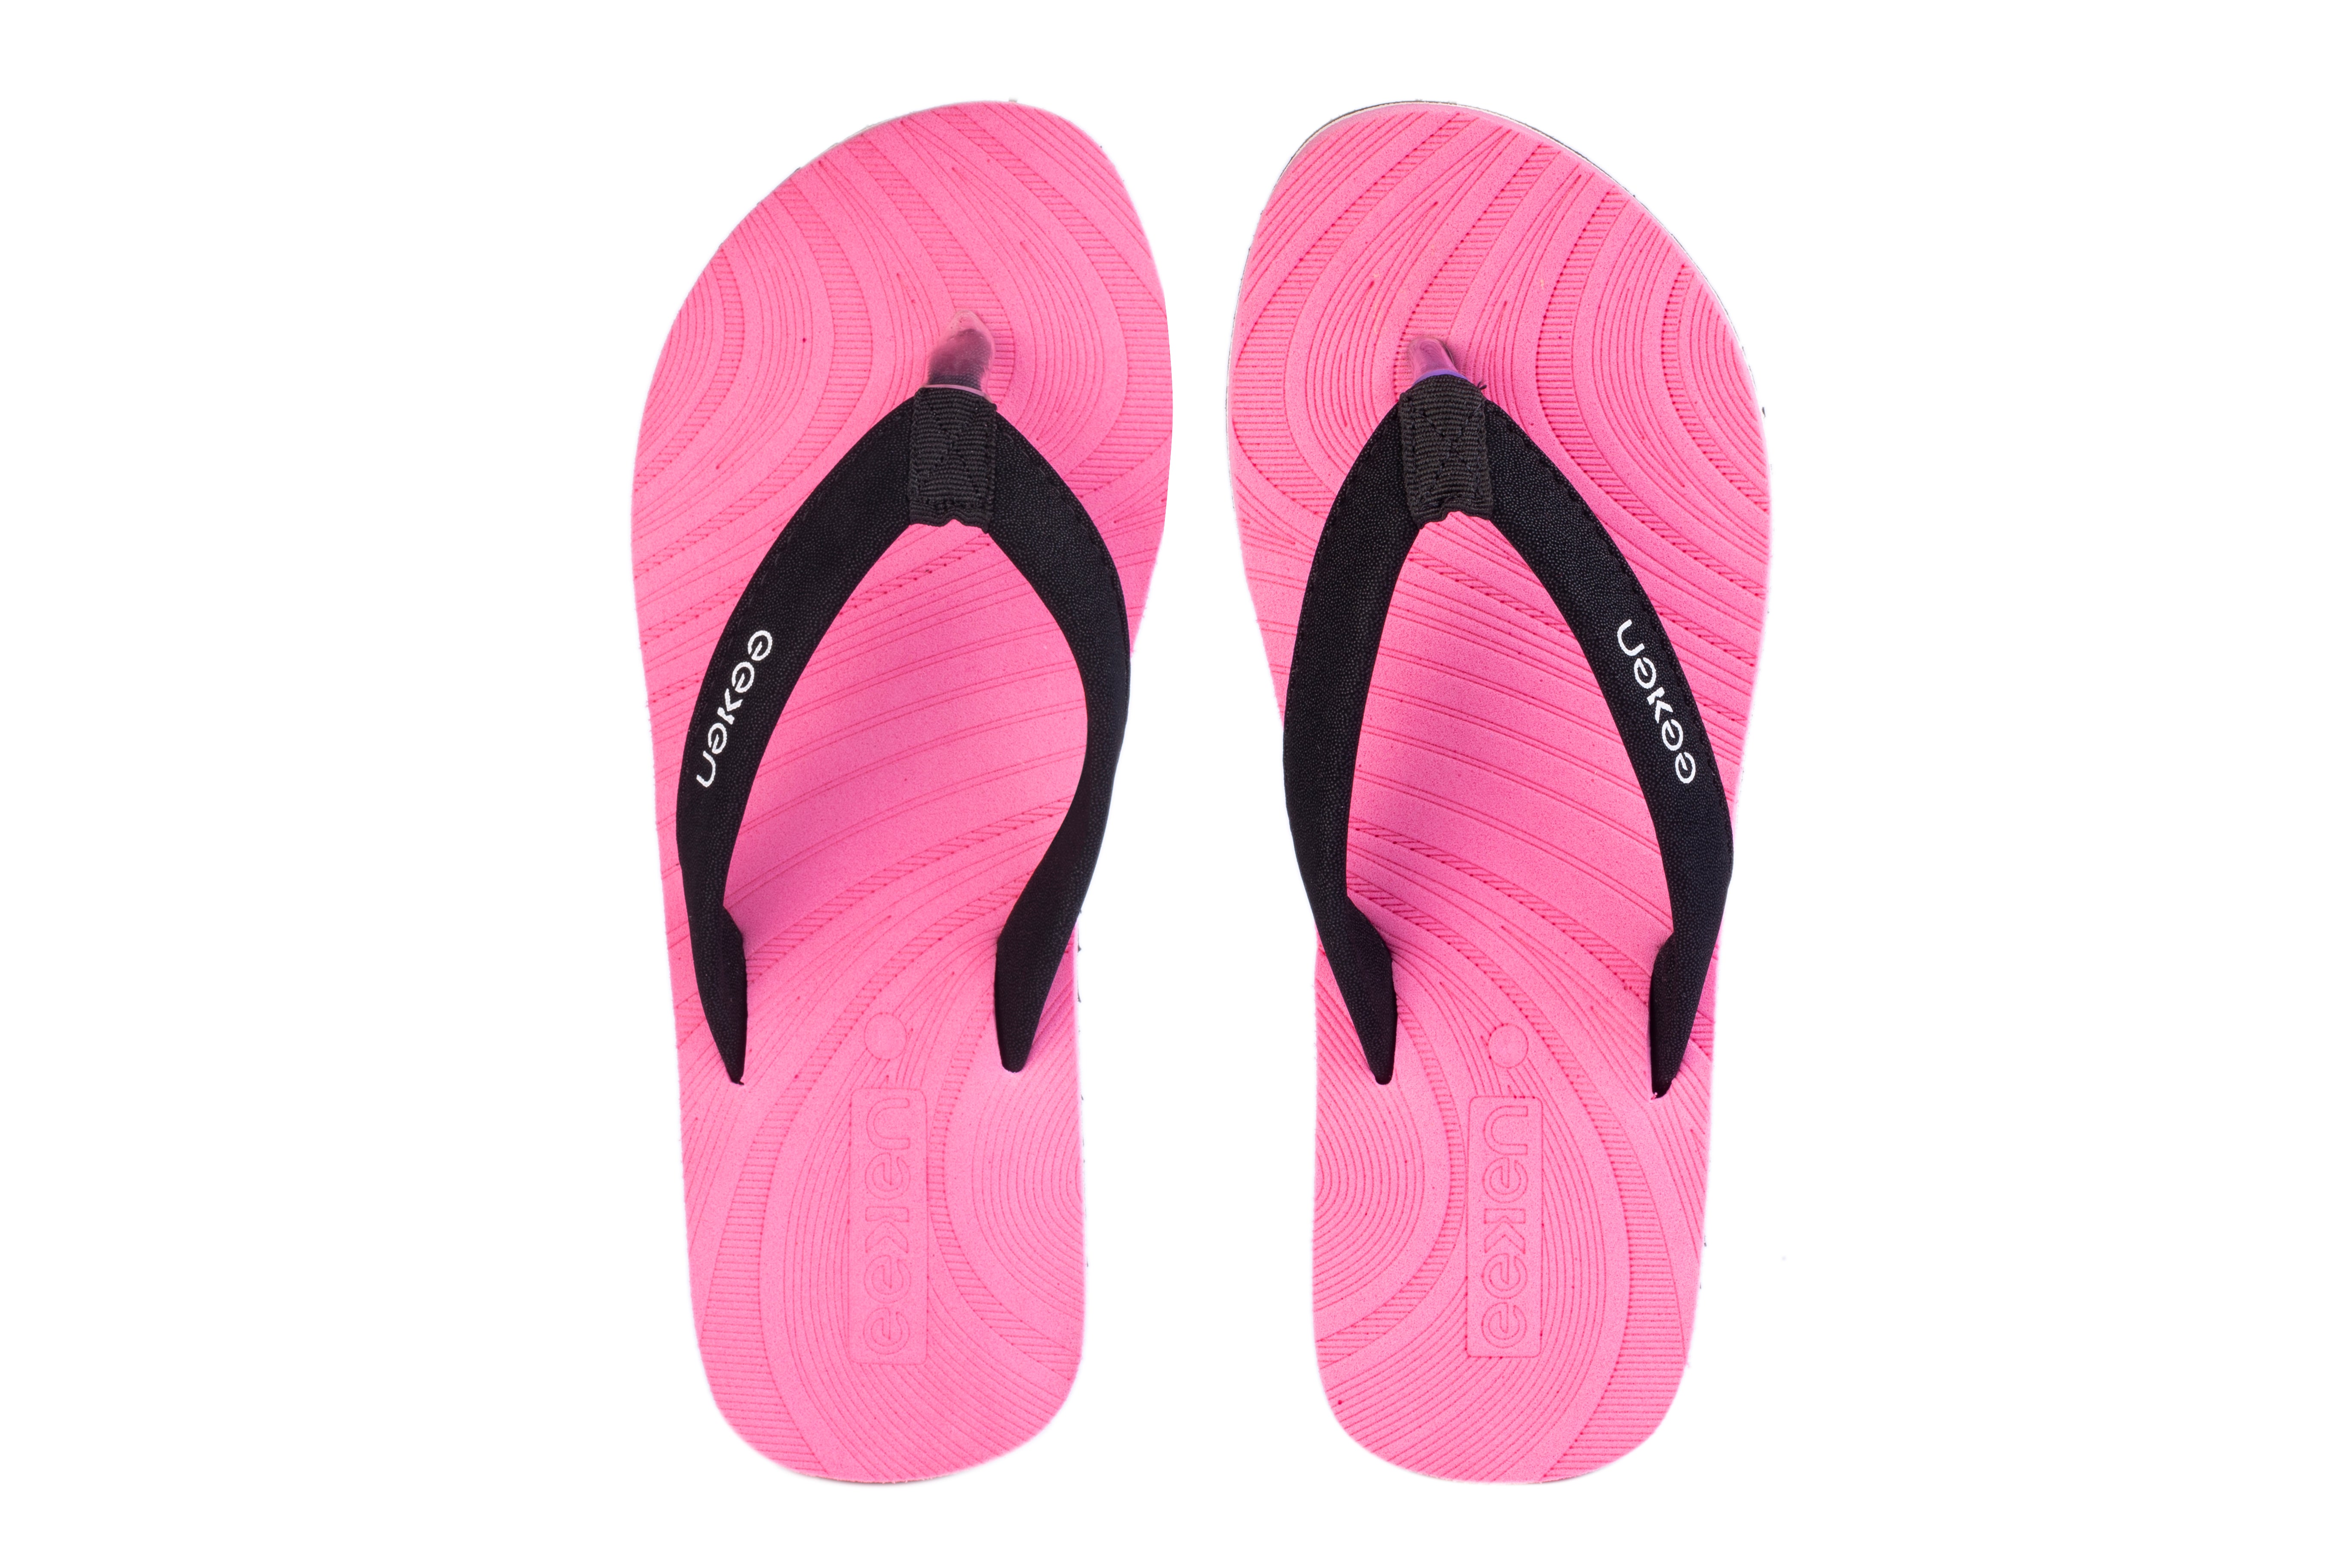 Eeken Pink Everyday Flip Flops For Women